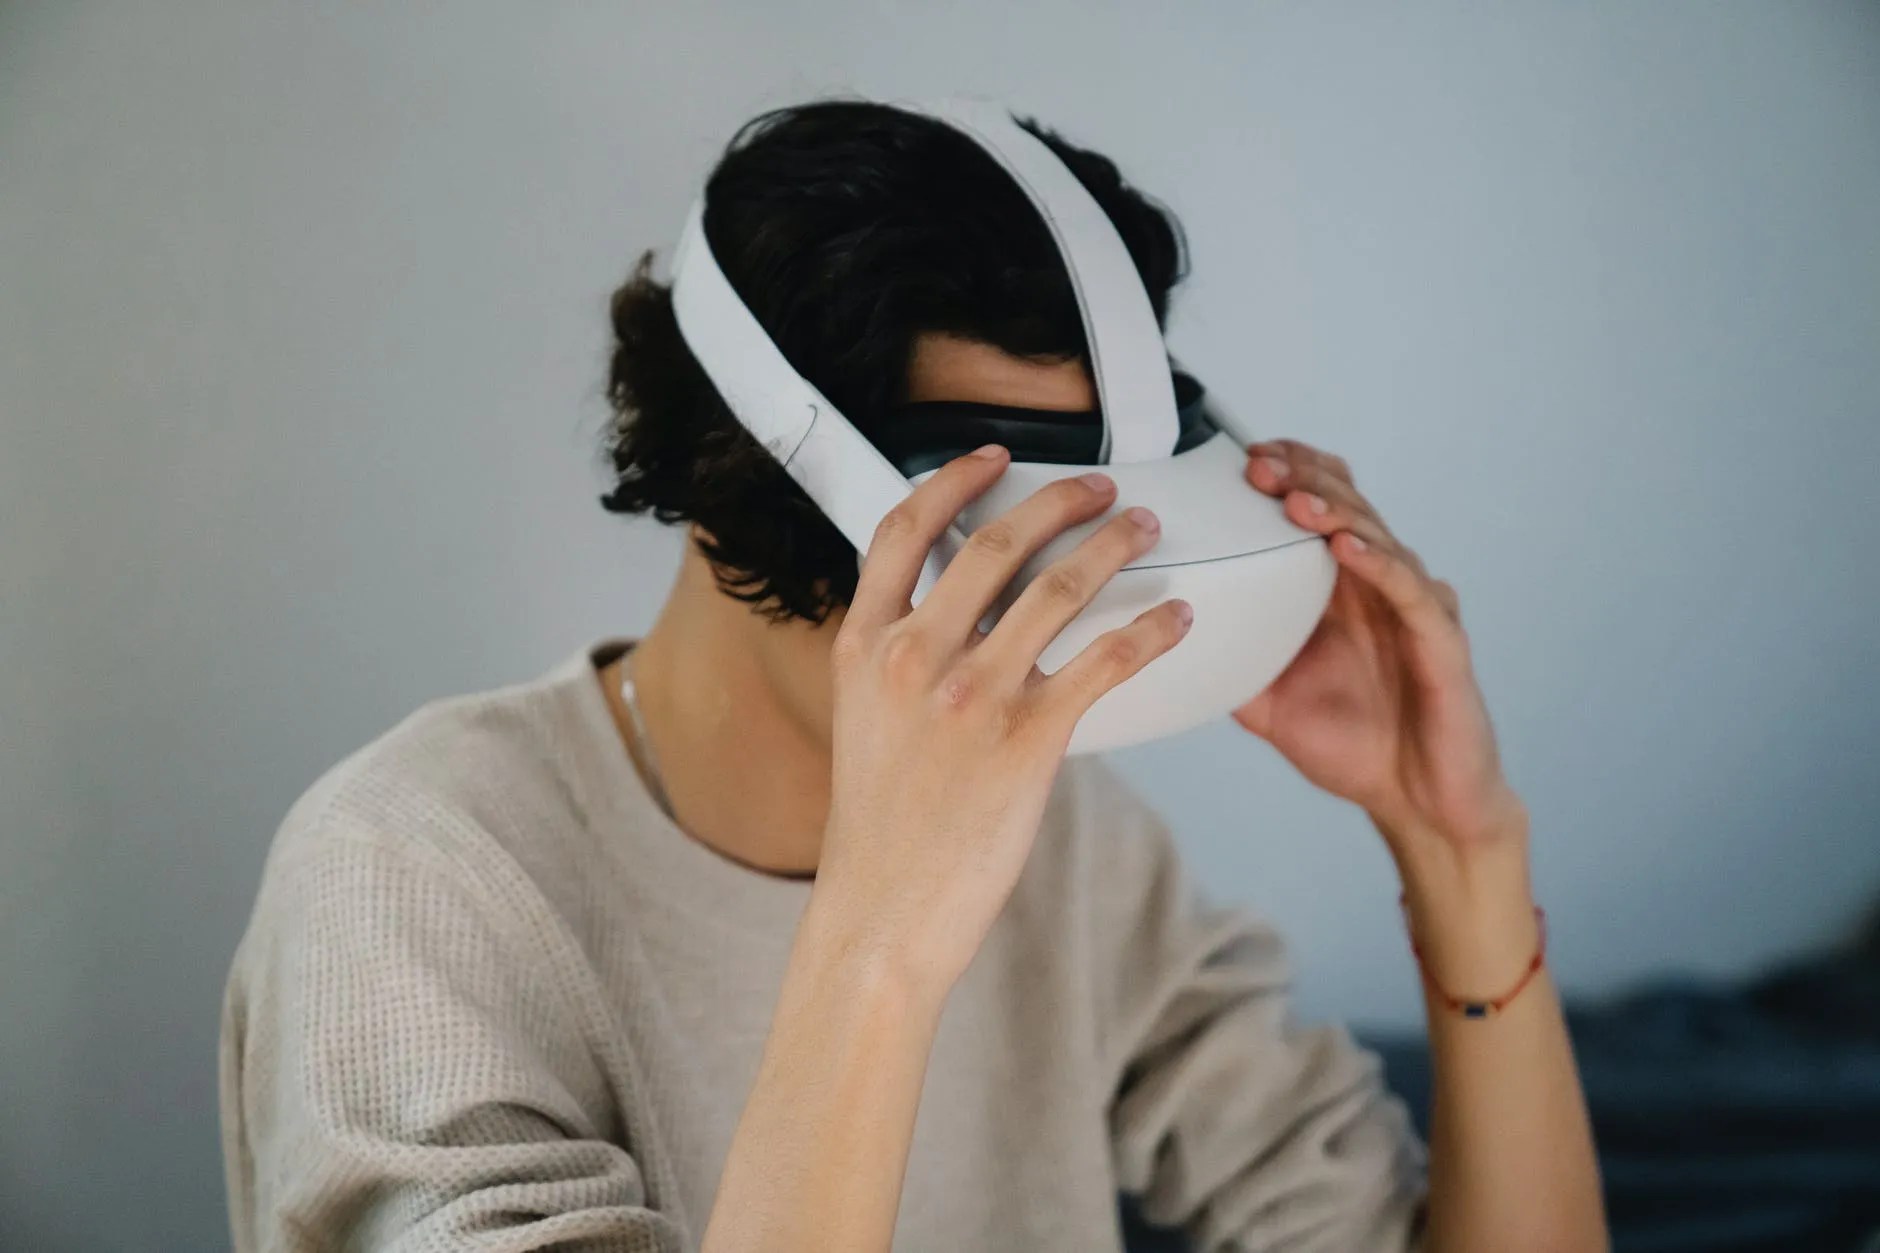 8 Best Free Samsung Gear VR Apps